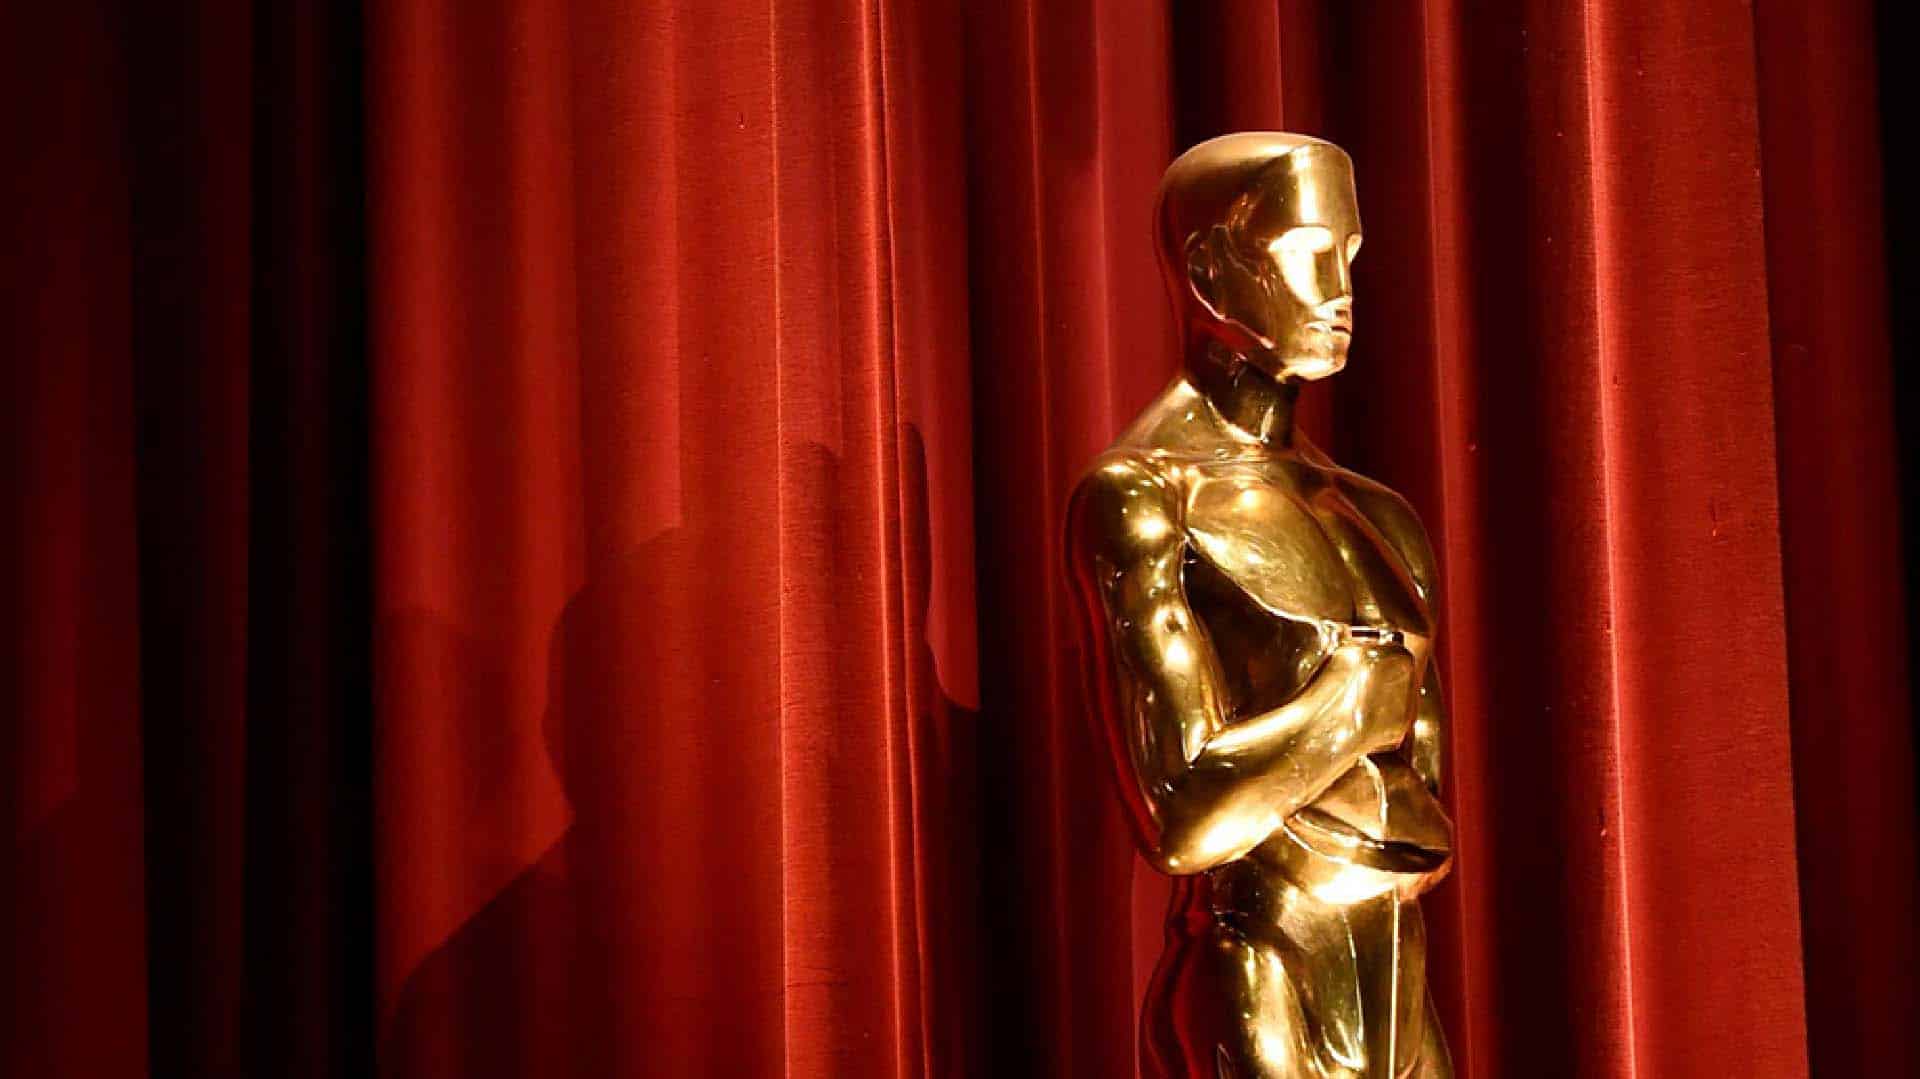 Oscar 2019: Roma e gli altri favoriti secondo le proiezioni degli analisti